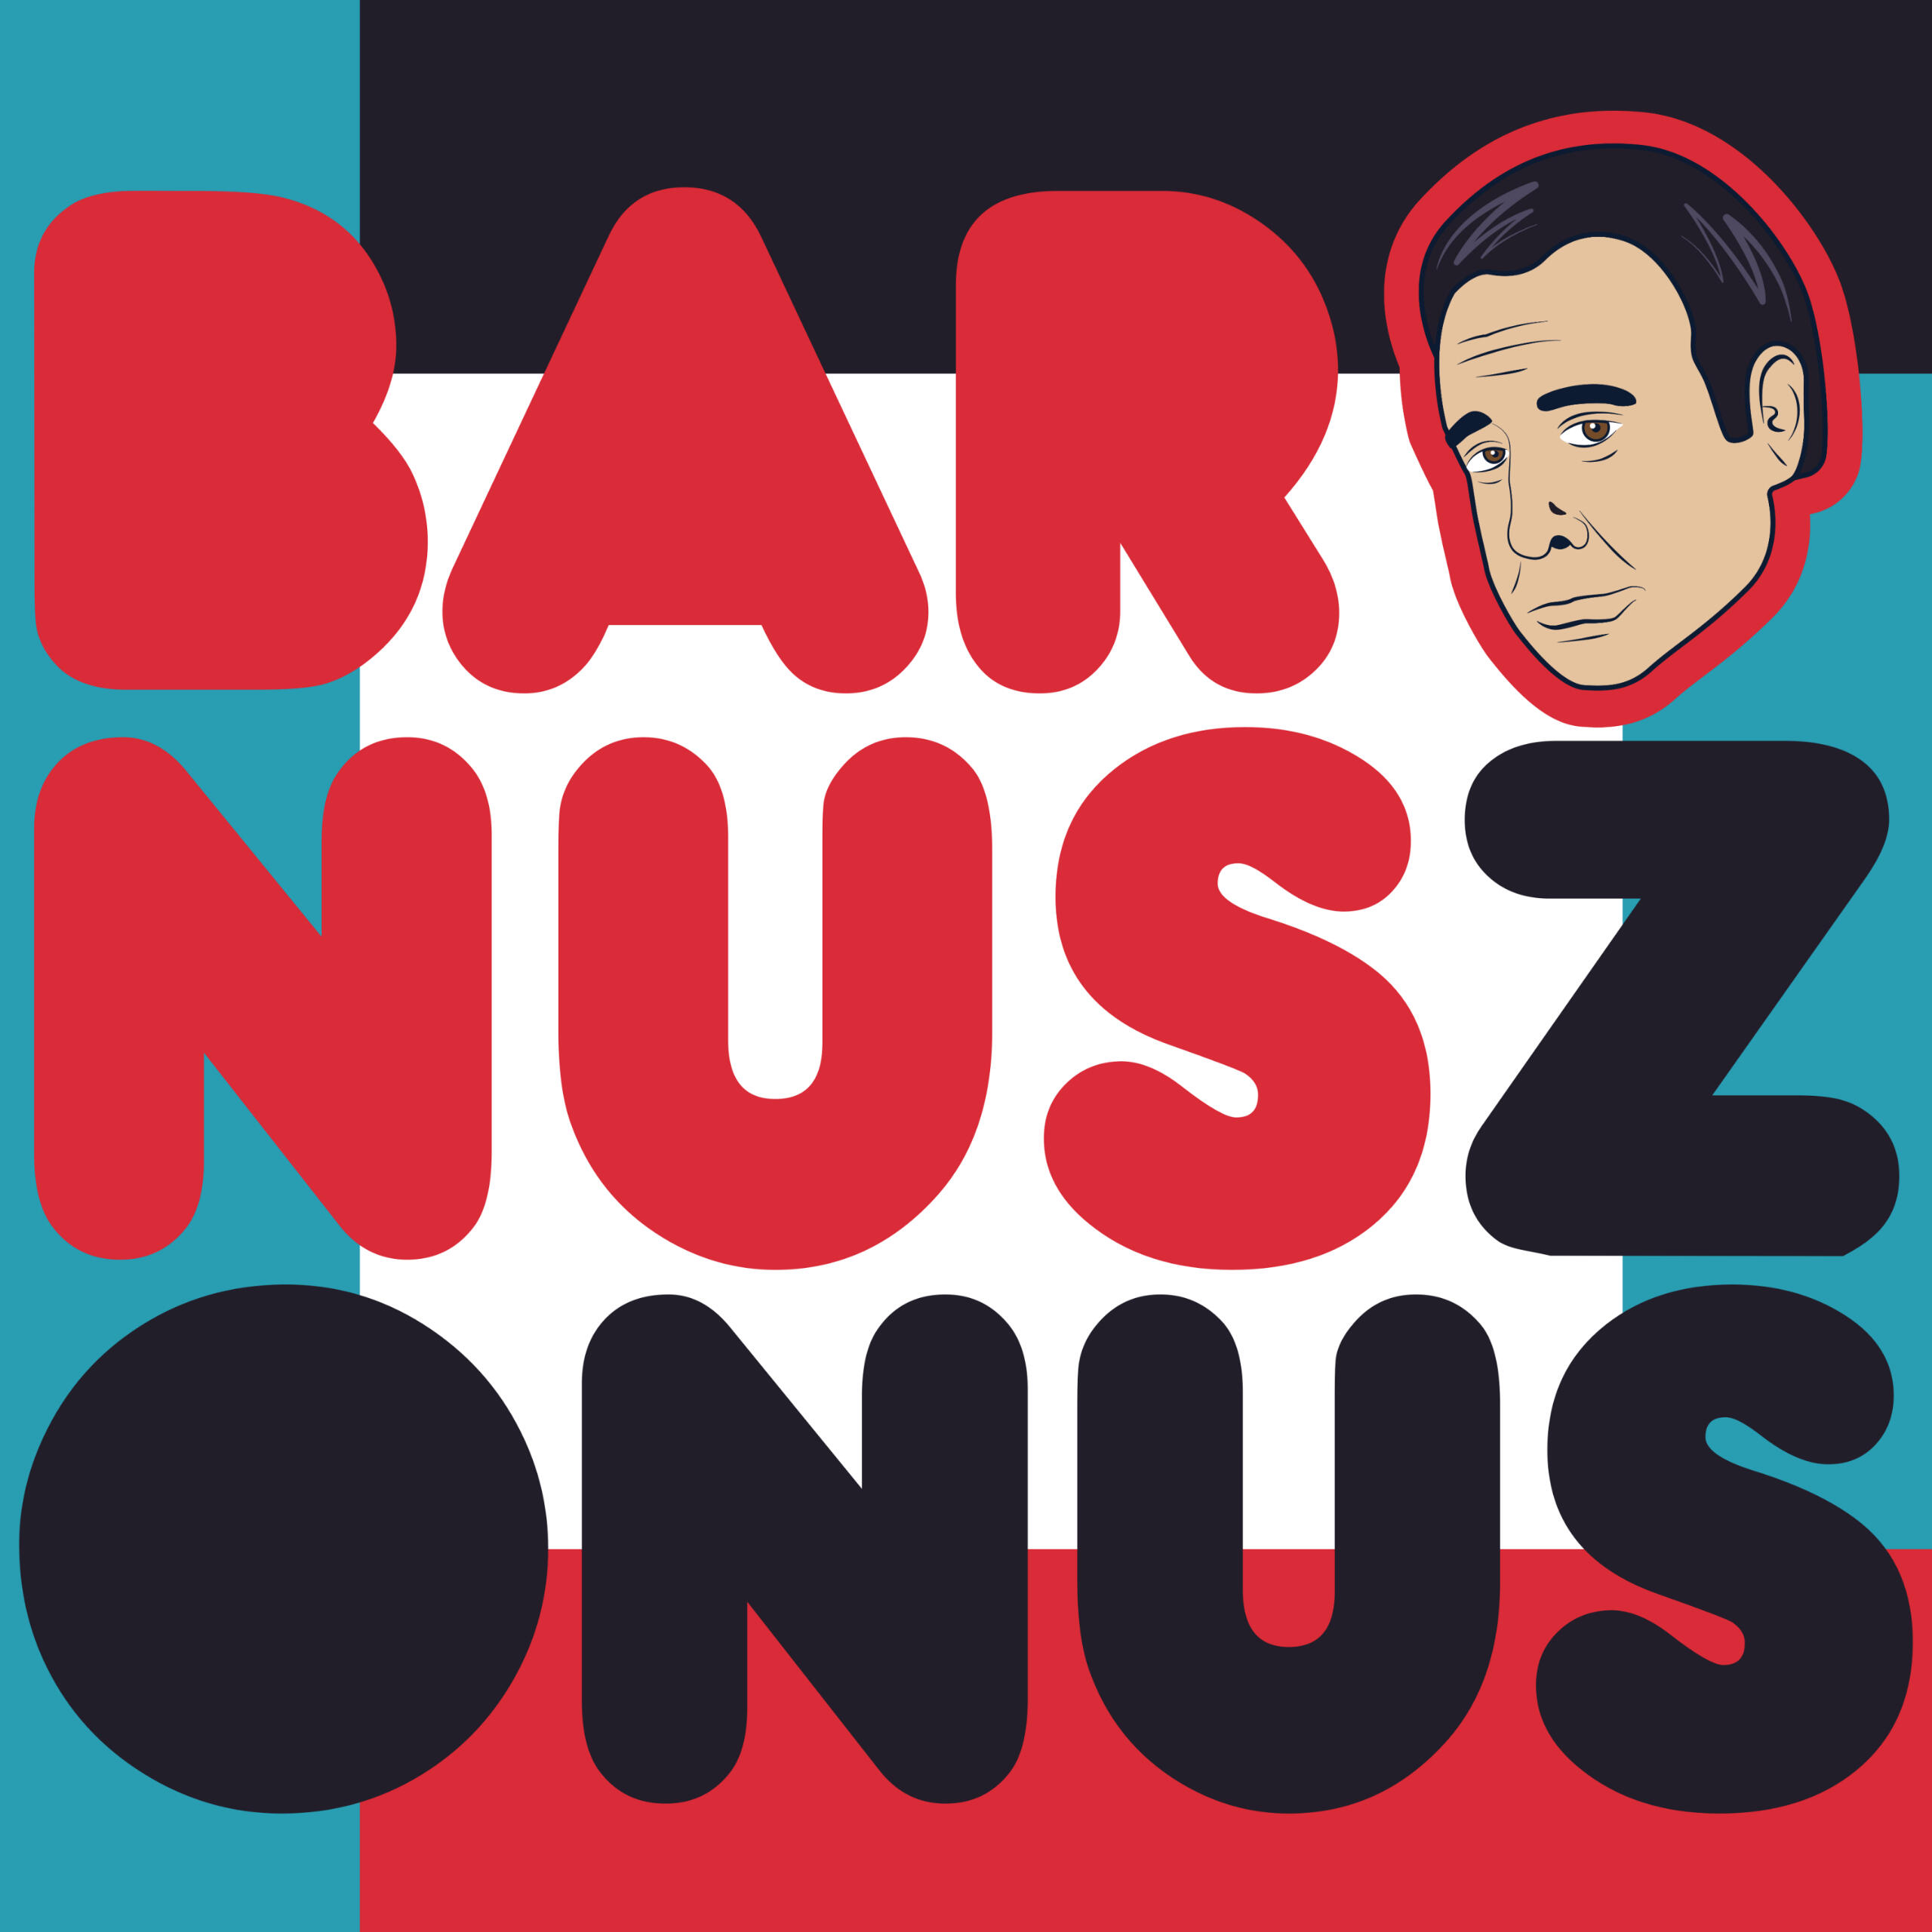 Baronus Zonus